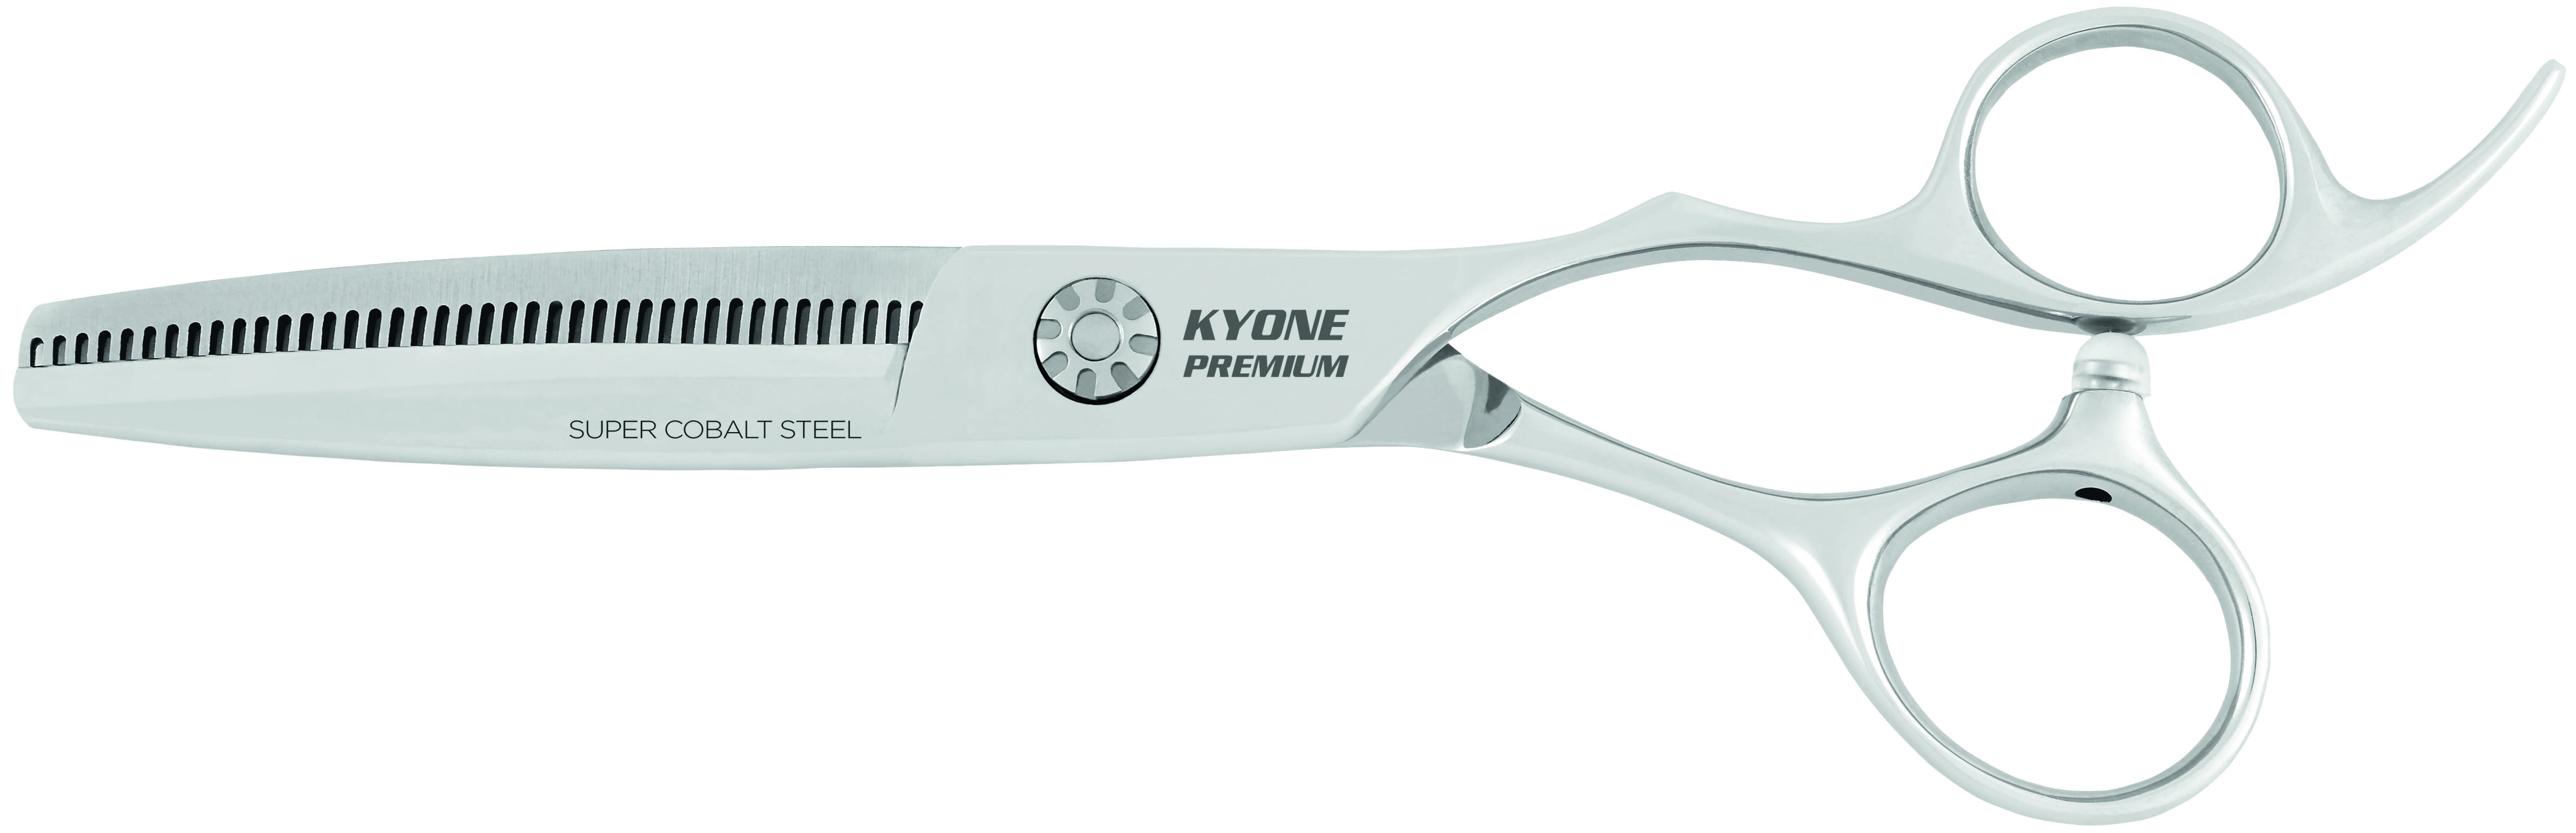 Kyone Premium Effilierschere 2400 6.0